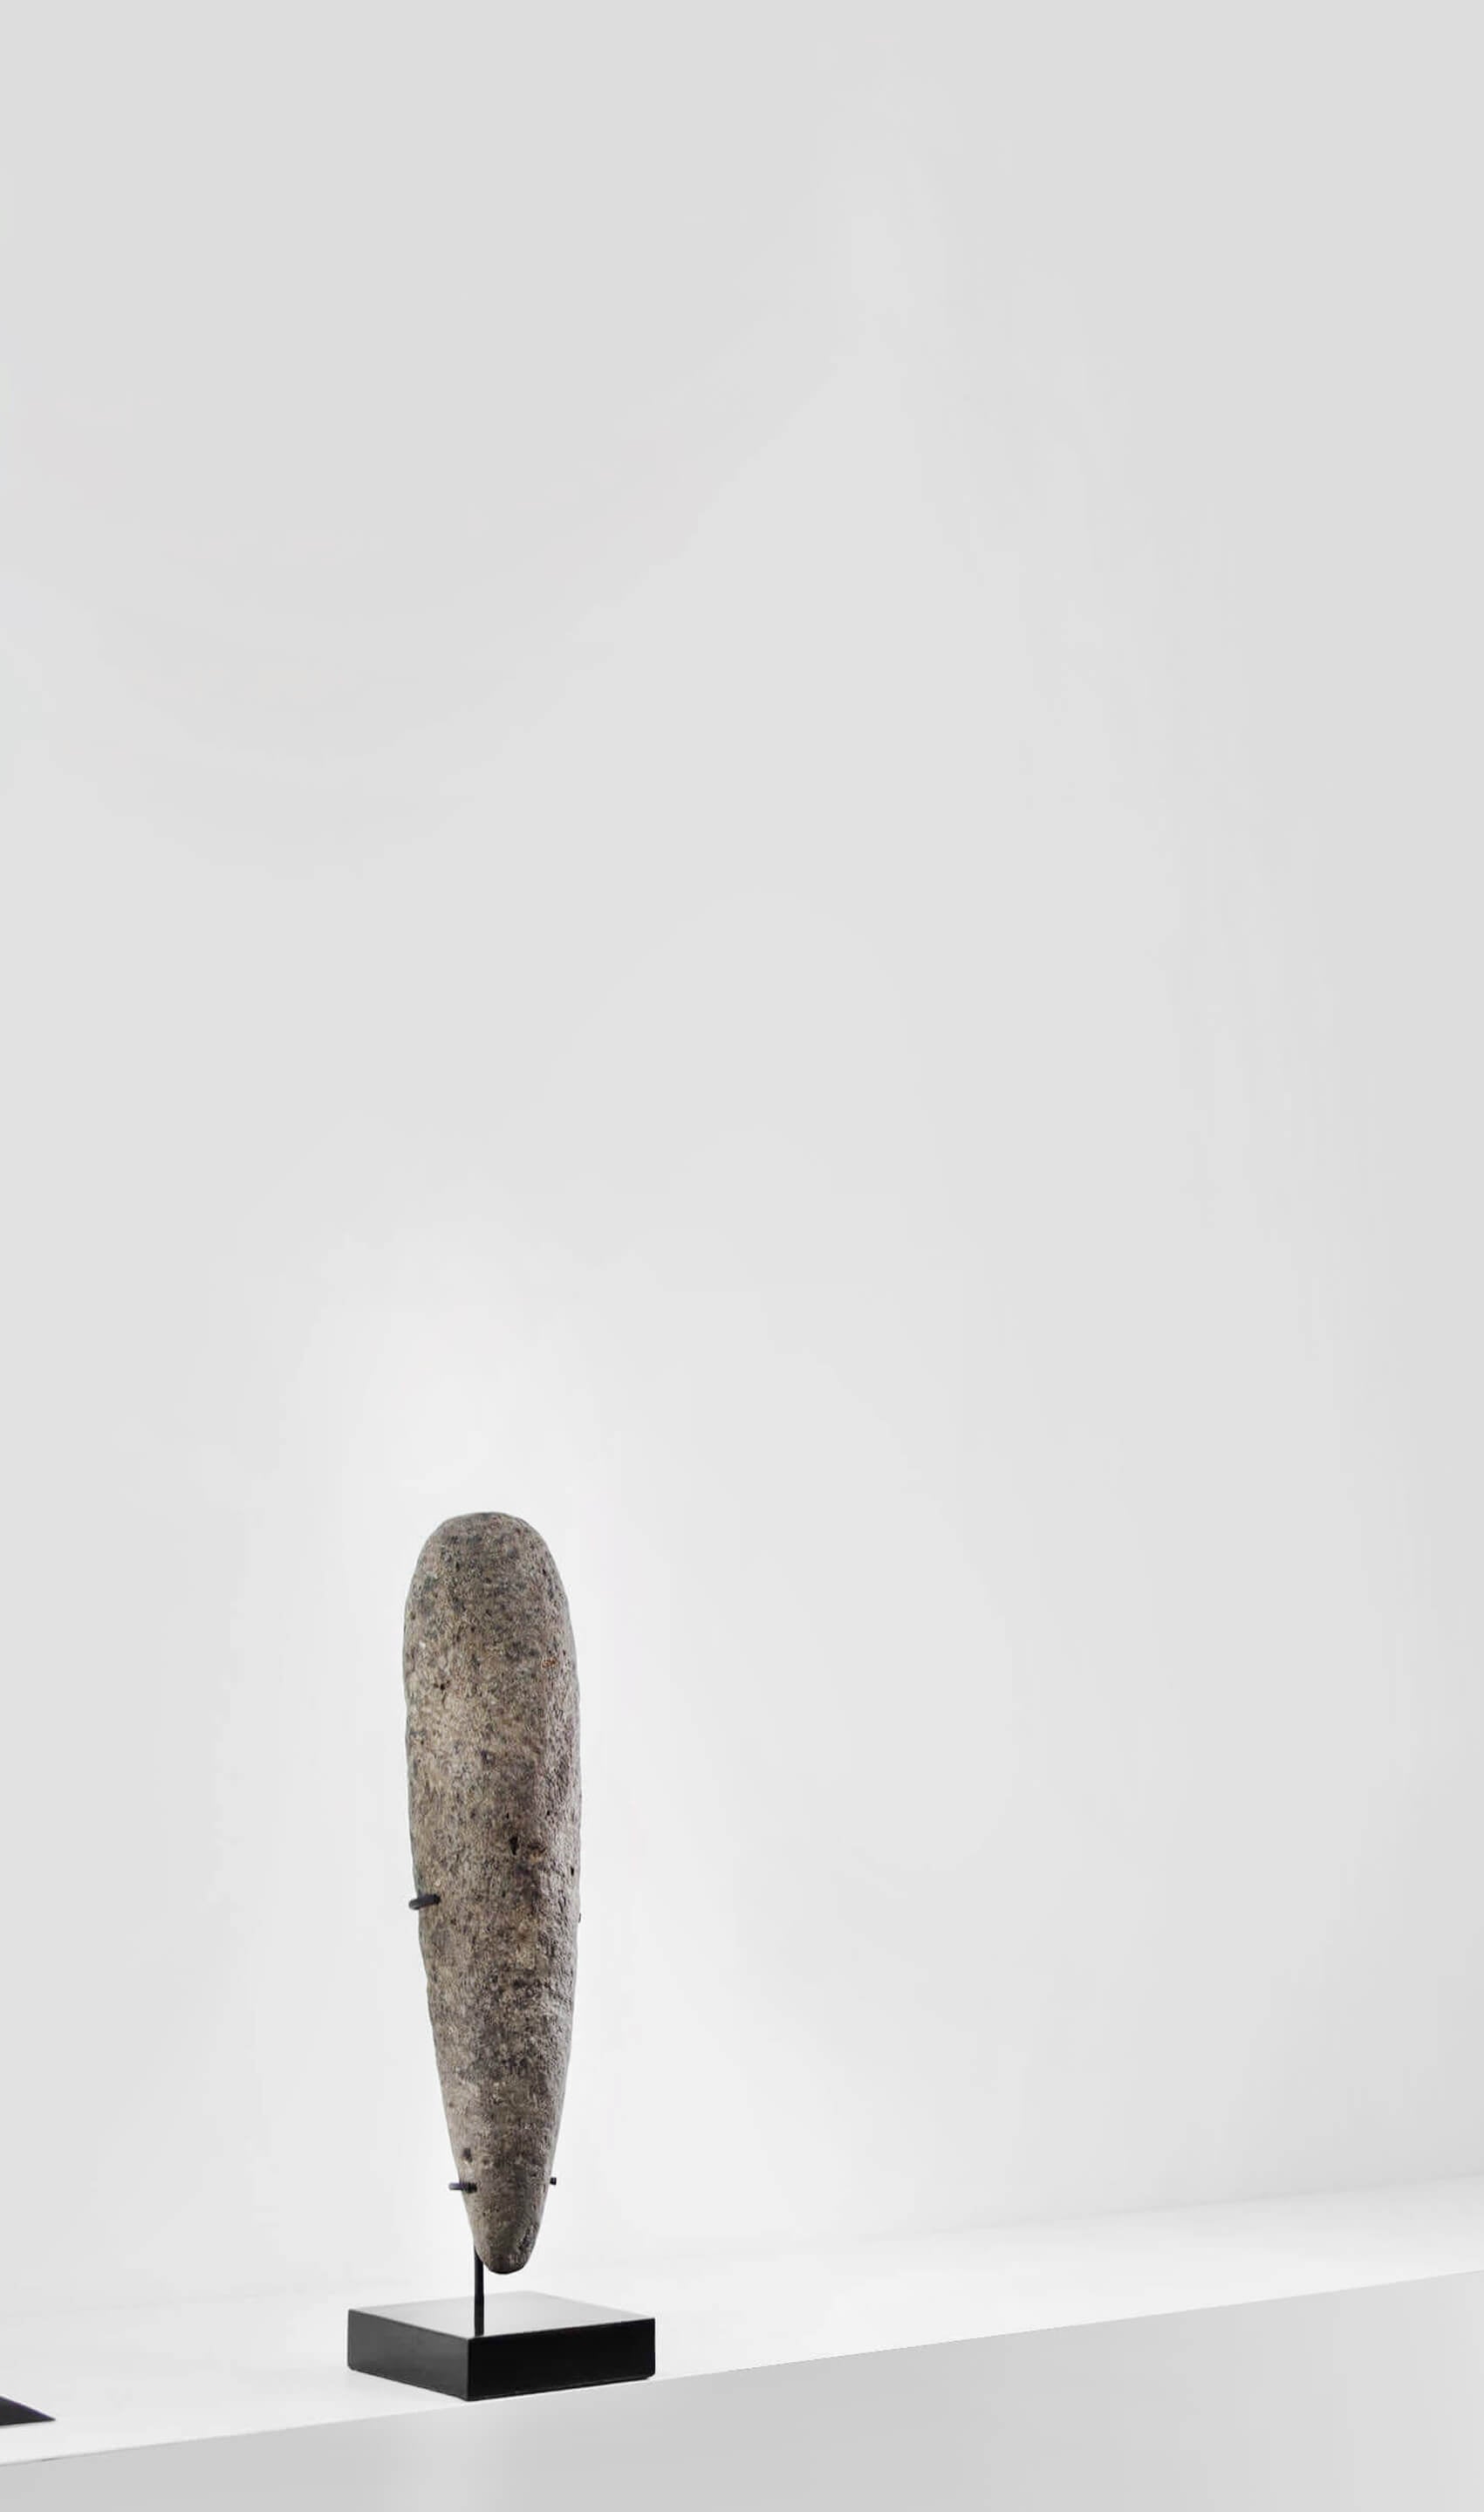 アーティファクト 新石器時代 カプシアン 手杵 [紀元前 8,500 年] 350mm